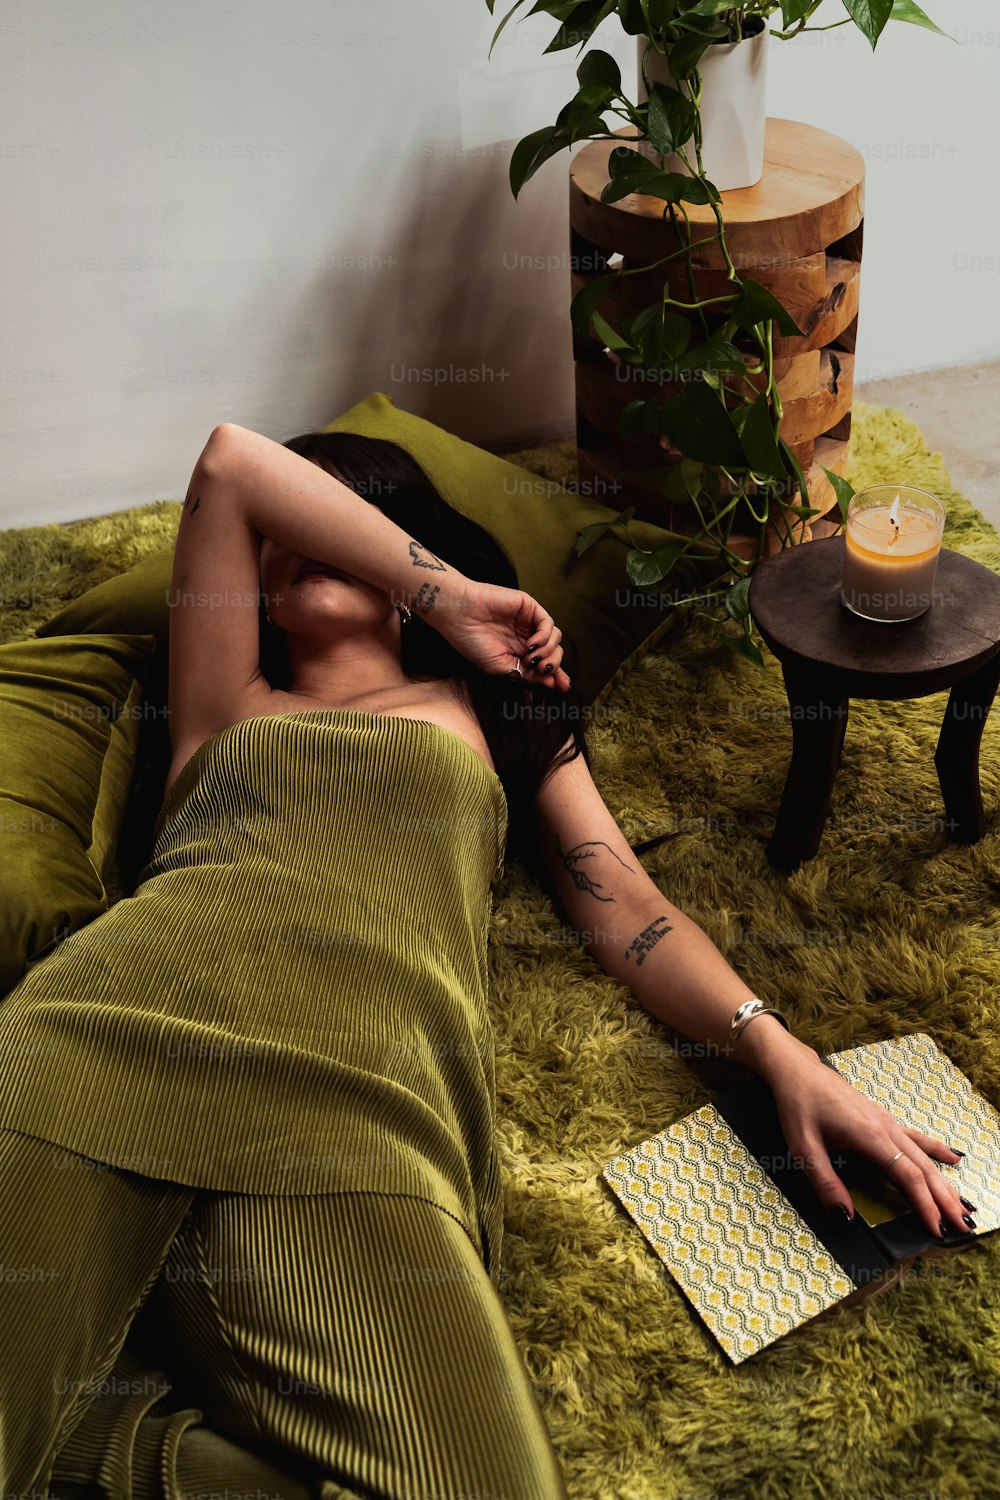 una mujer acostada en una cama junto a una planta en maceta